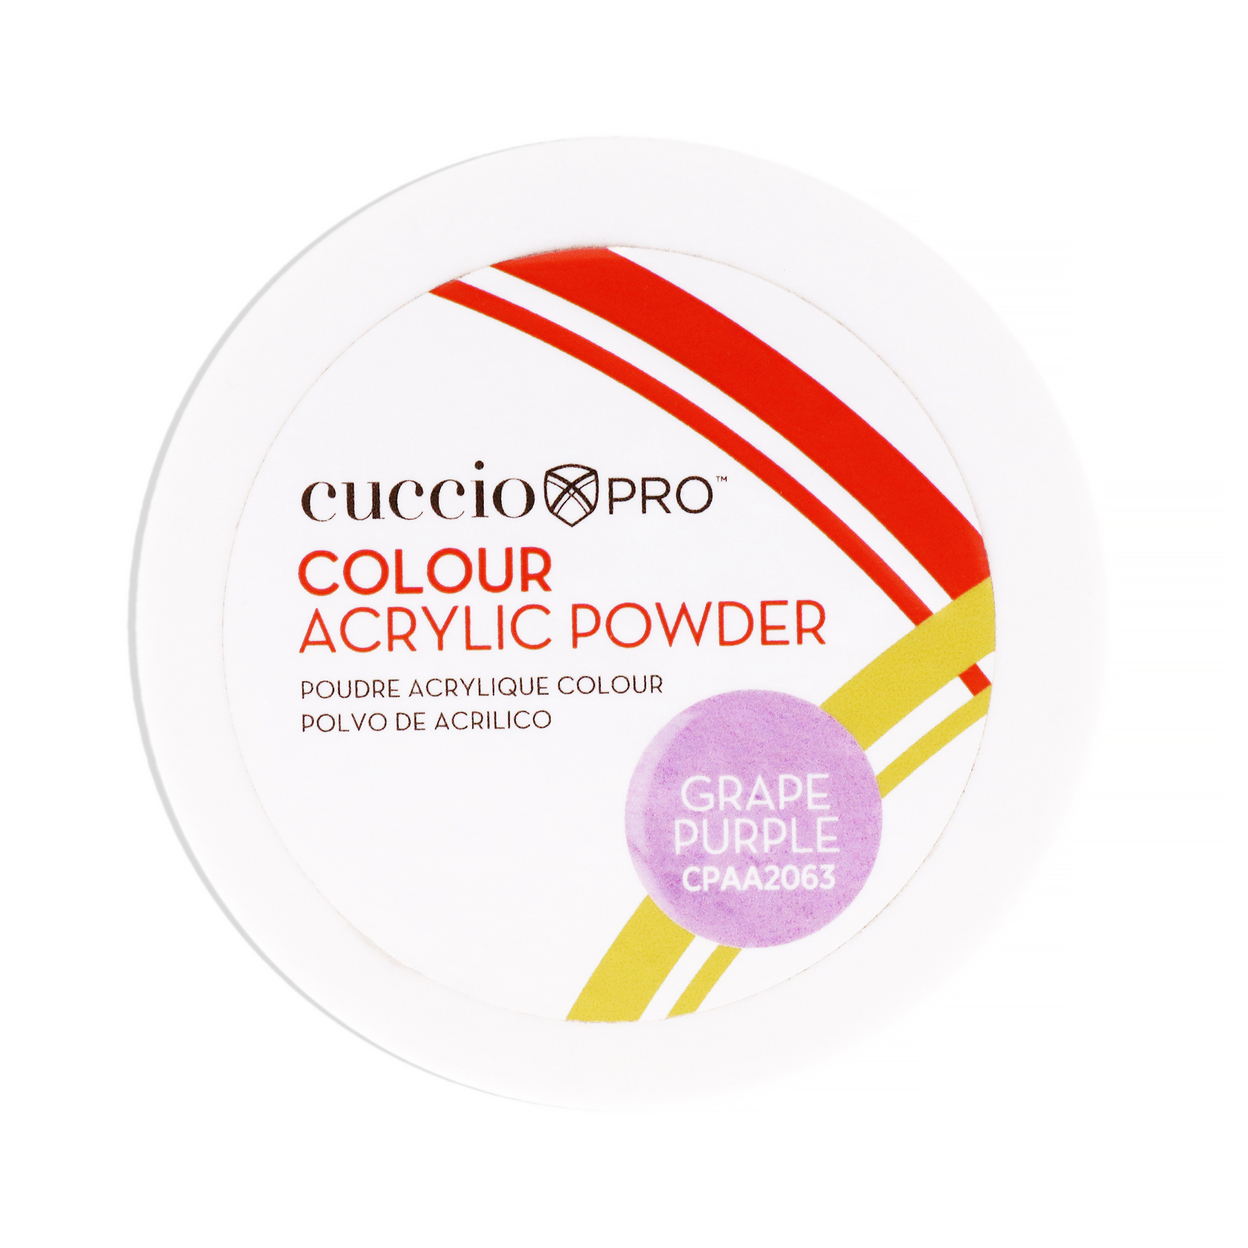 Cuccio PRO Colour Acrylic Powder - Grape Purple 1.6 Oz